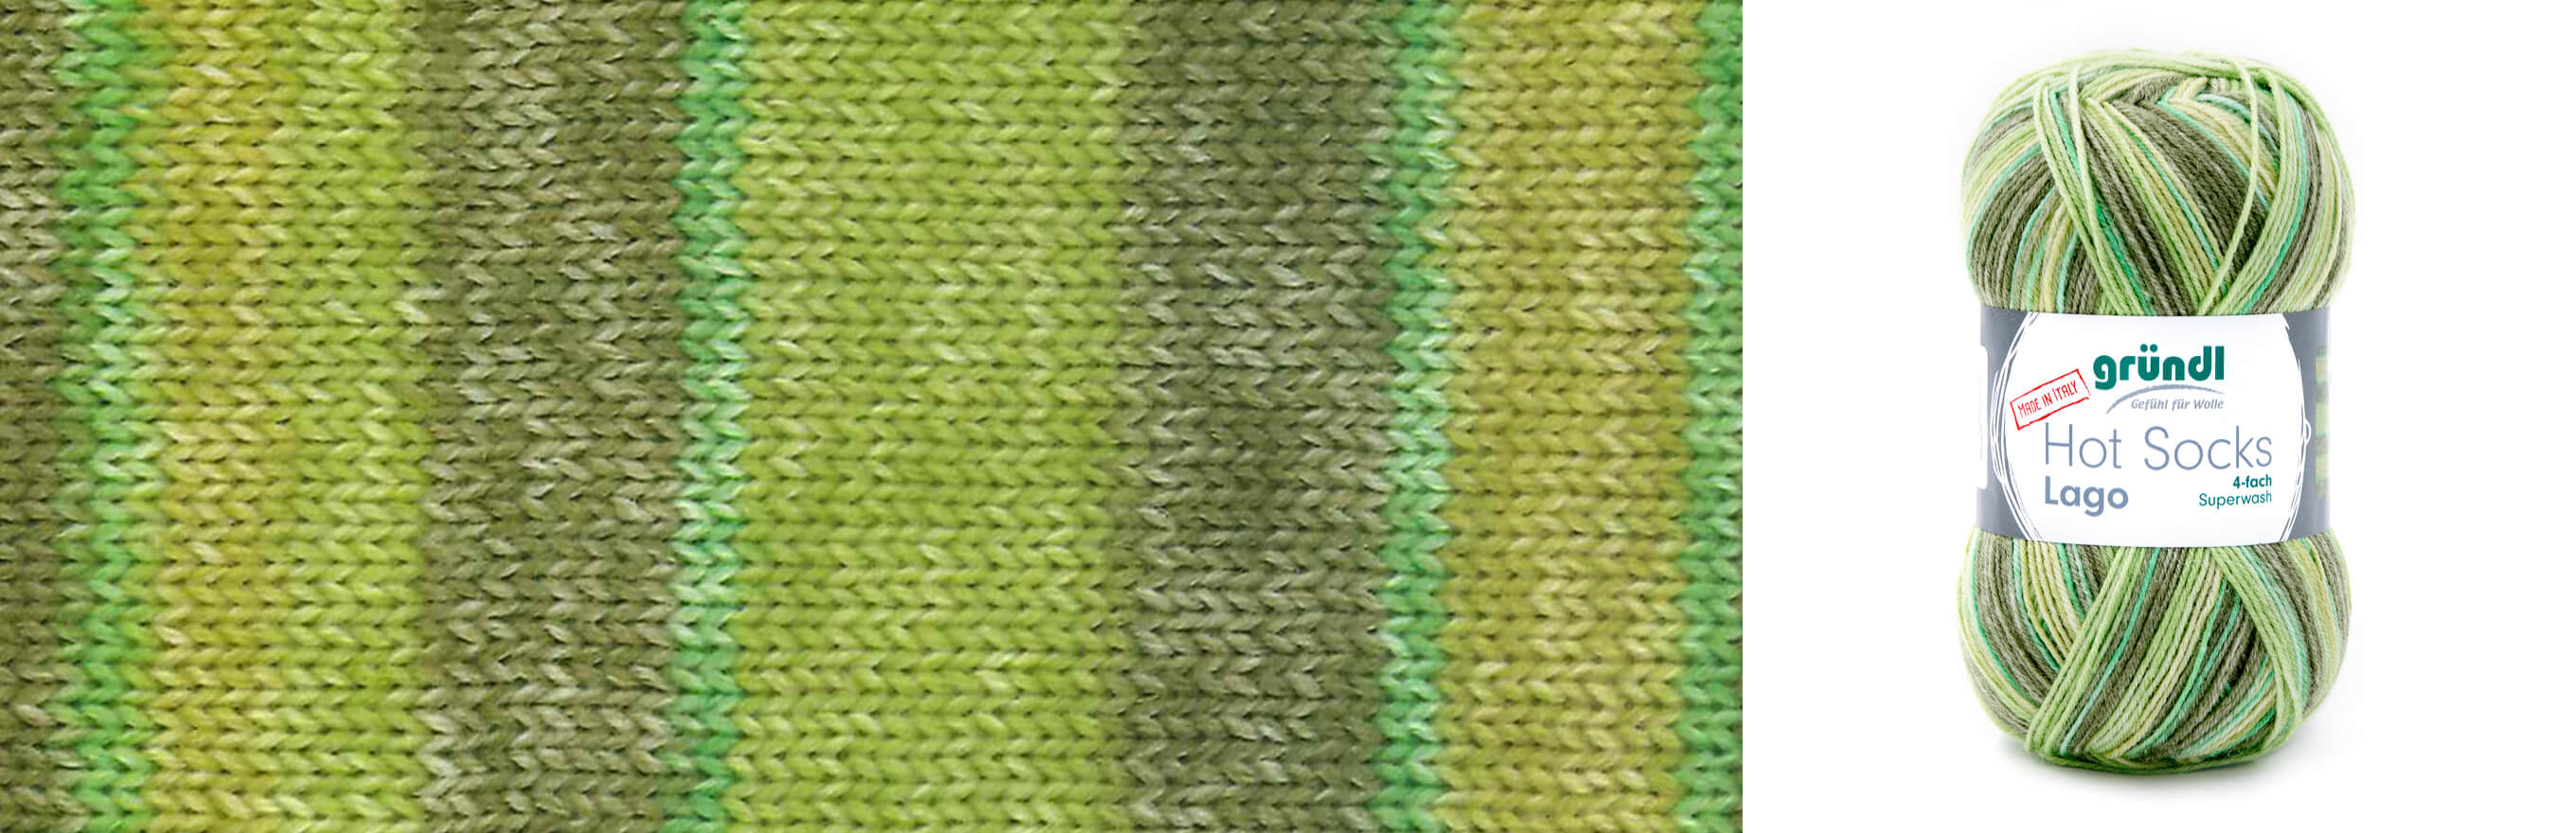 grüne Gründl Wolle Hot Socks Lago